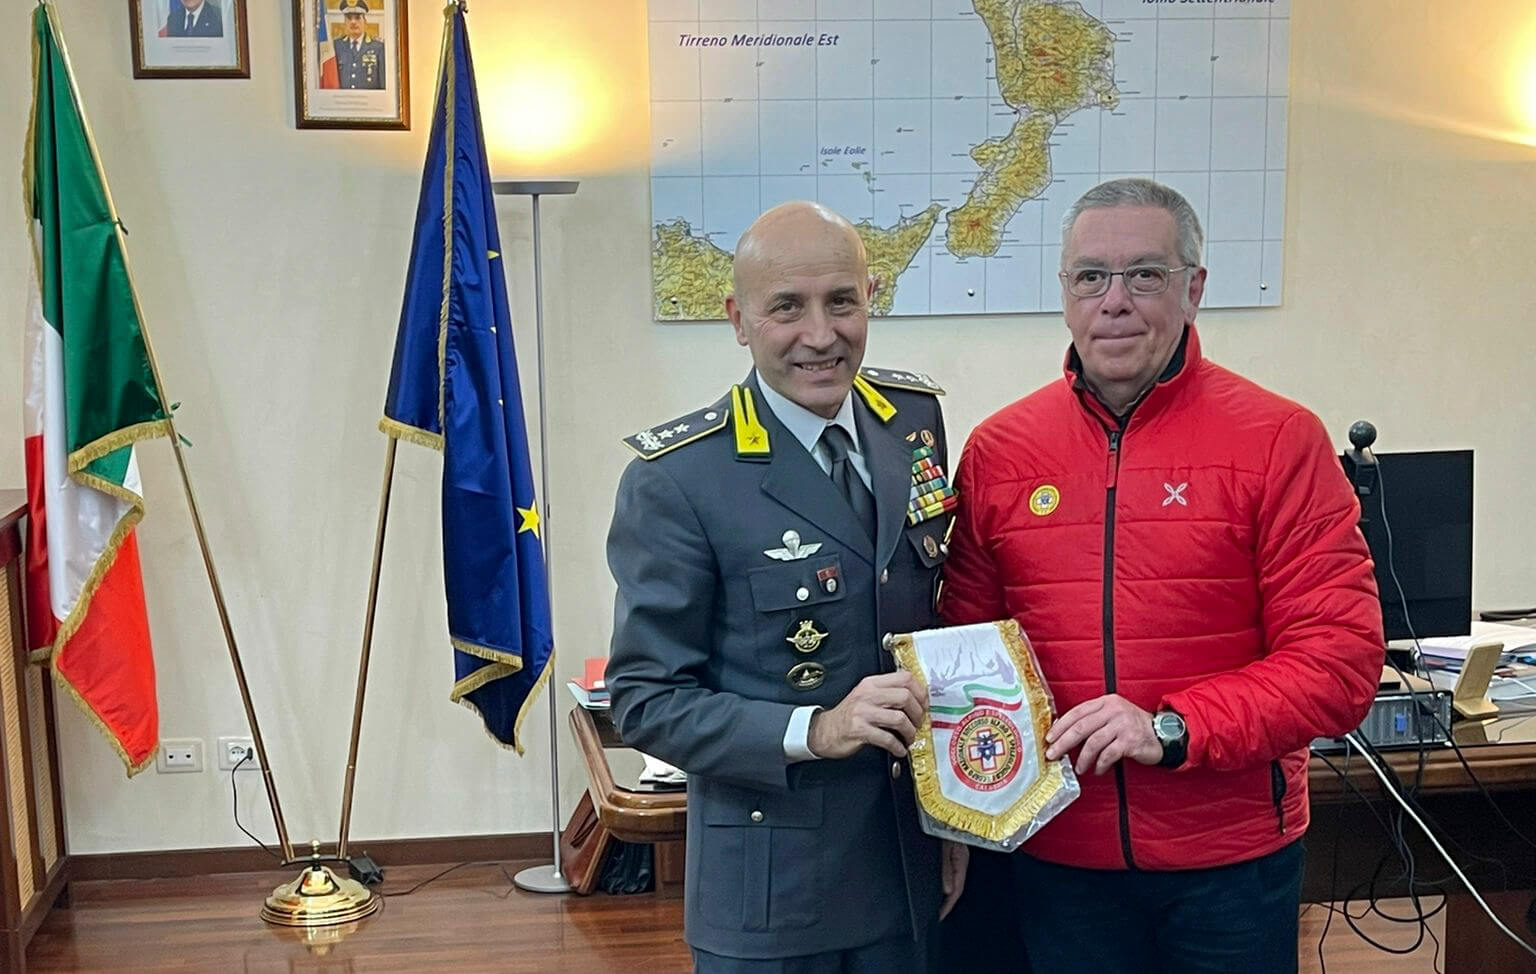 Incontro istituzionale tra Guardia di Finanza e CNSAS Calabria